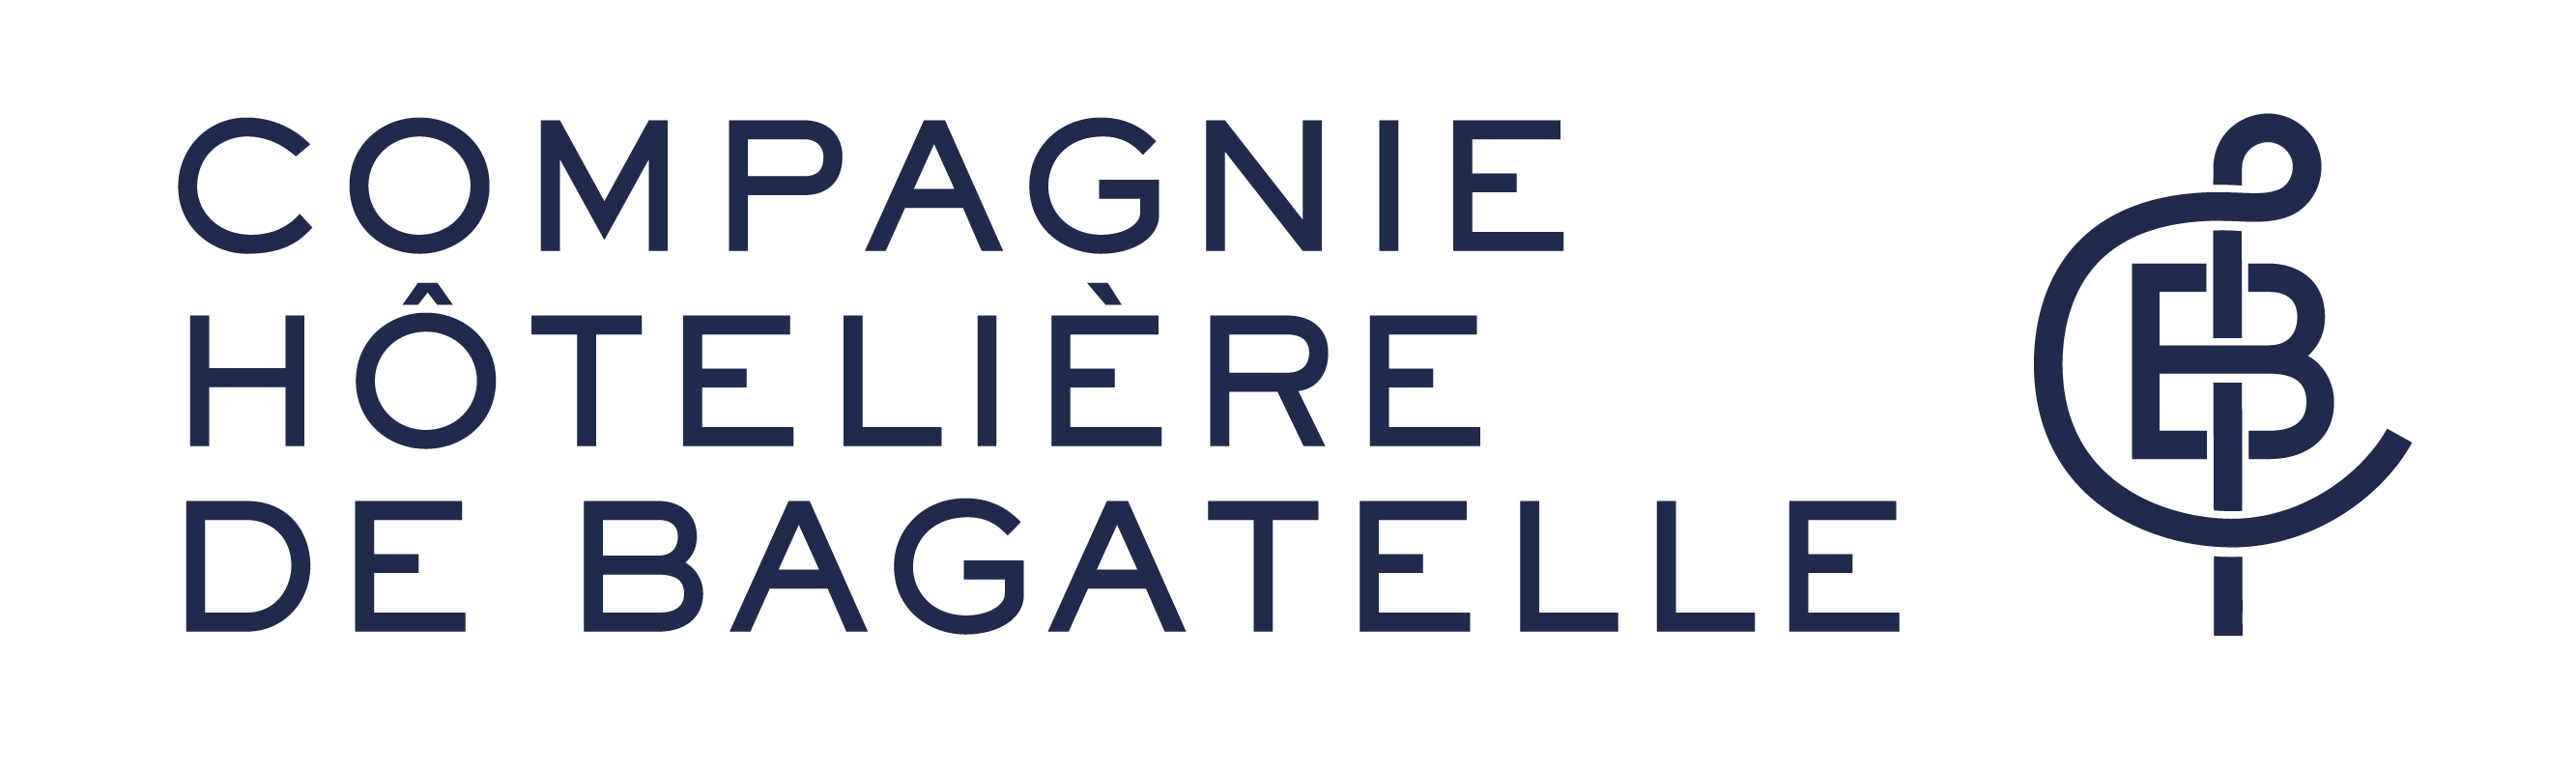 Agence WEBCOM 2020 - Avis Compagnie Hôtelière Bagatelle